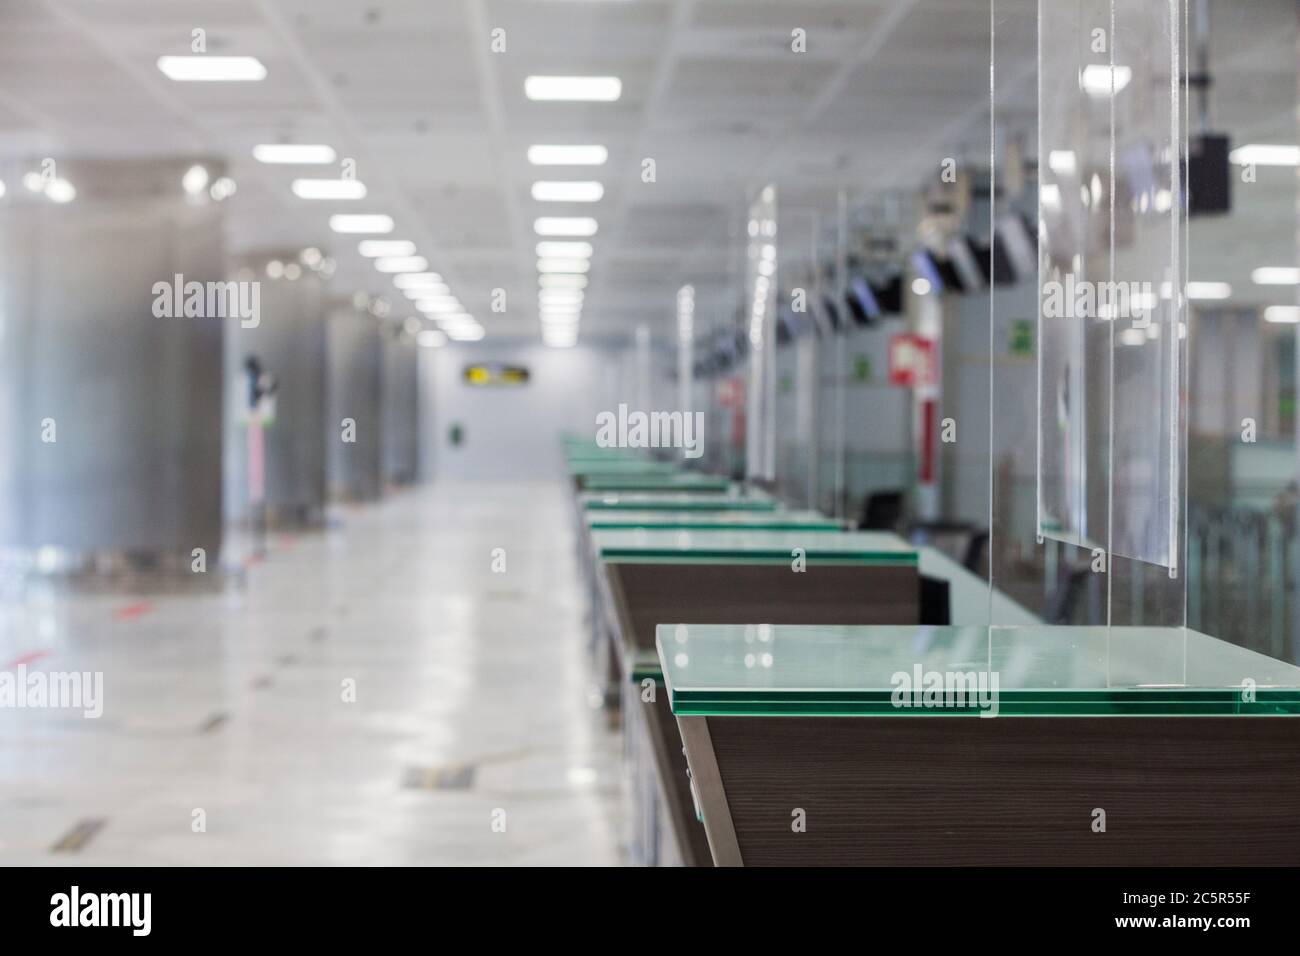 Vider le terminal inutilisé, Lonuge, comptoirs d'enregistrement à l'aéroport de Tenerife Sud, zone des départs, en raison des restrictions de voyage liées à l'épidémie de coronavirus Covid-19. Banque D'Images